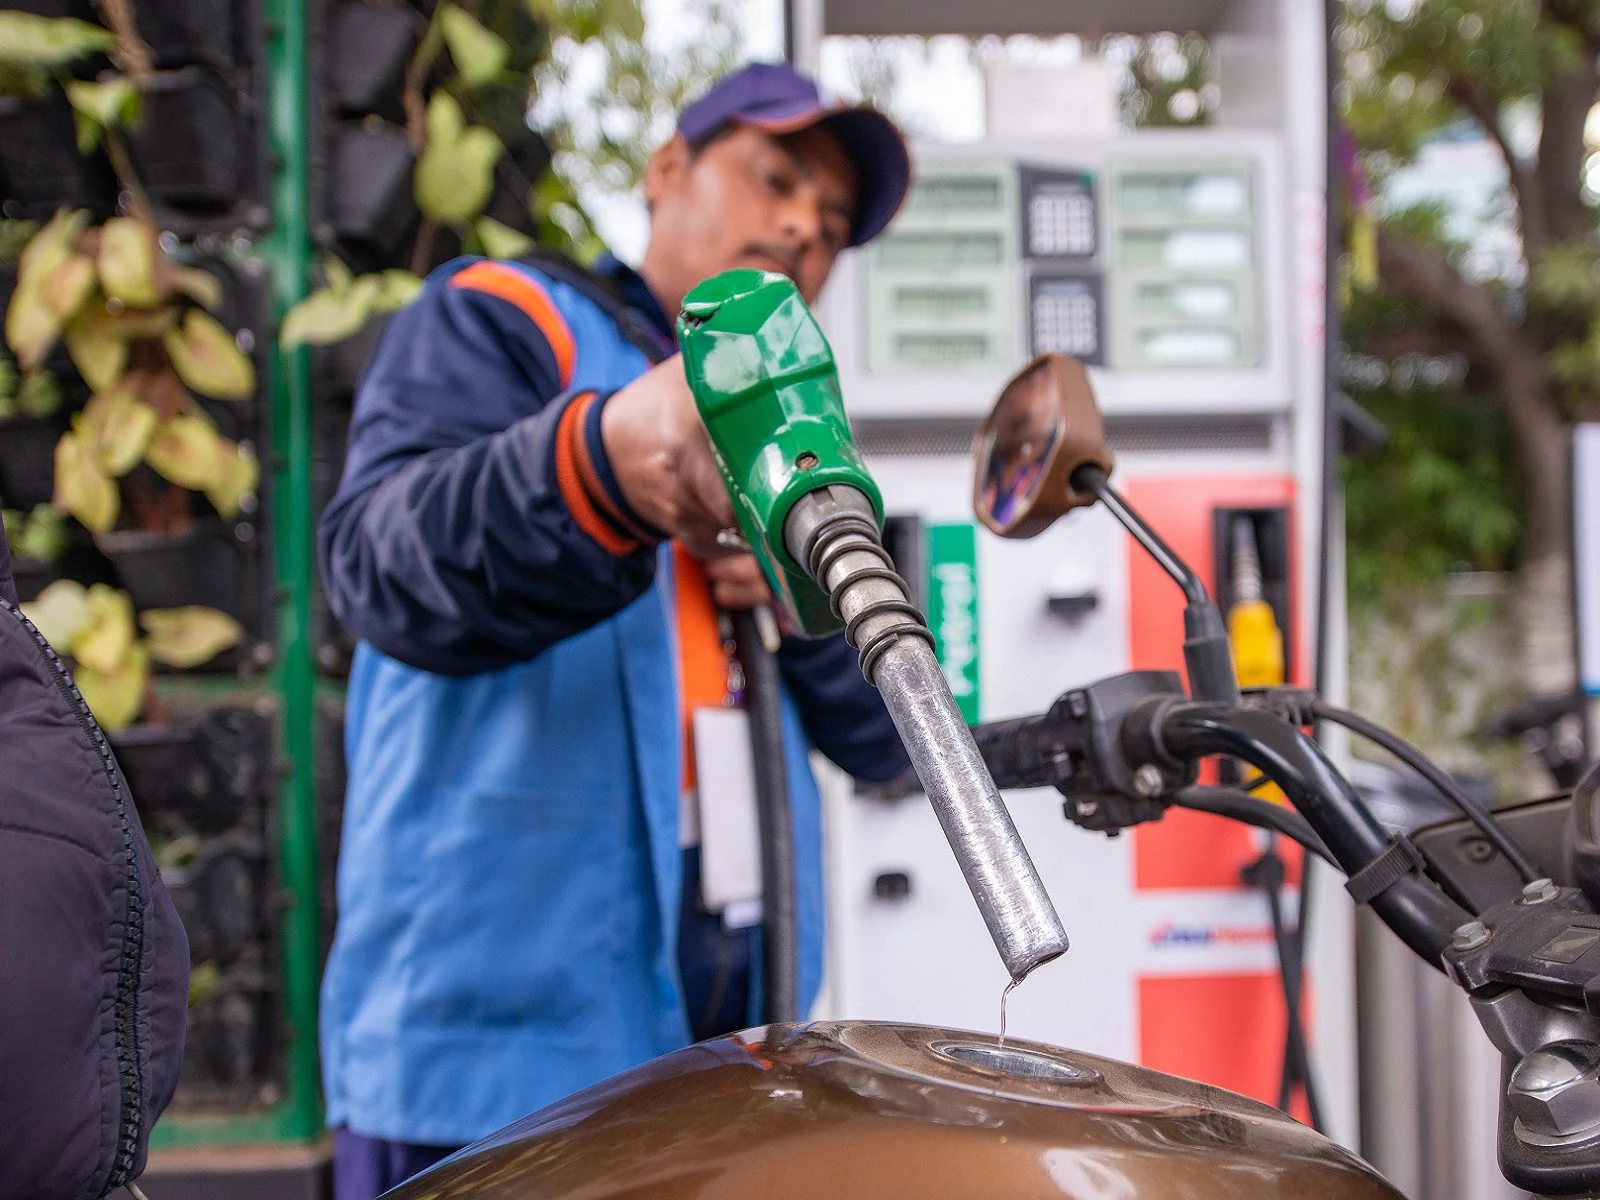 Madhya Pradesh Petrol pump operators are worried about oil prices ANN MP News: तेल की कीमतों को लेकर परेशान हैं पेट्रोल पंप संचालक, उठा रहे यह कदम